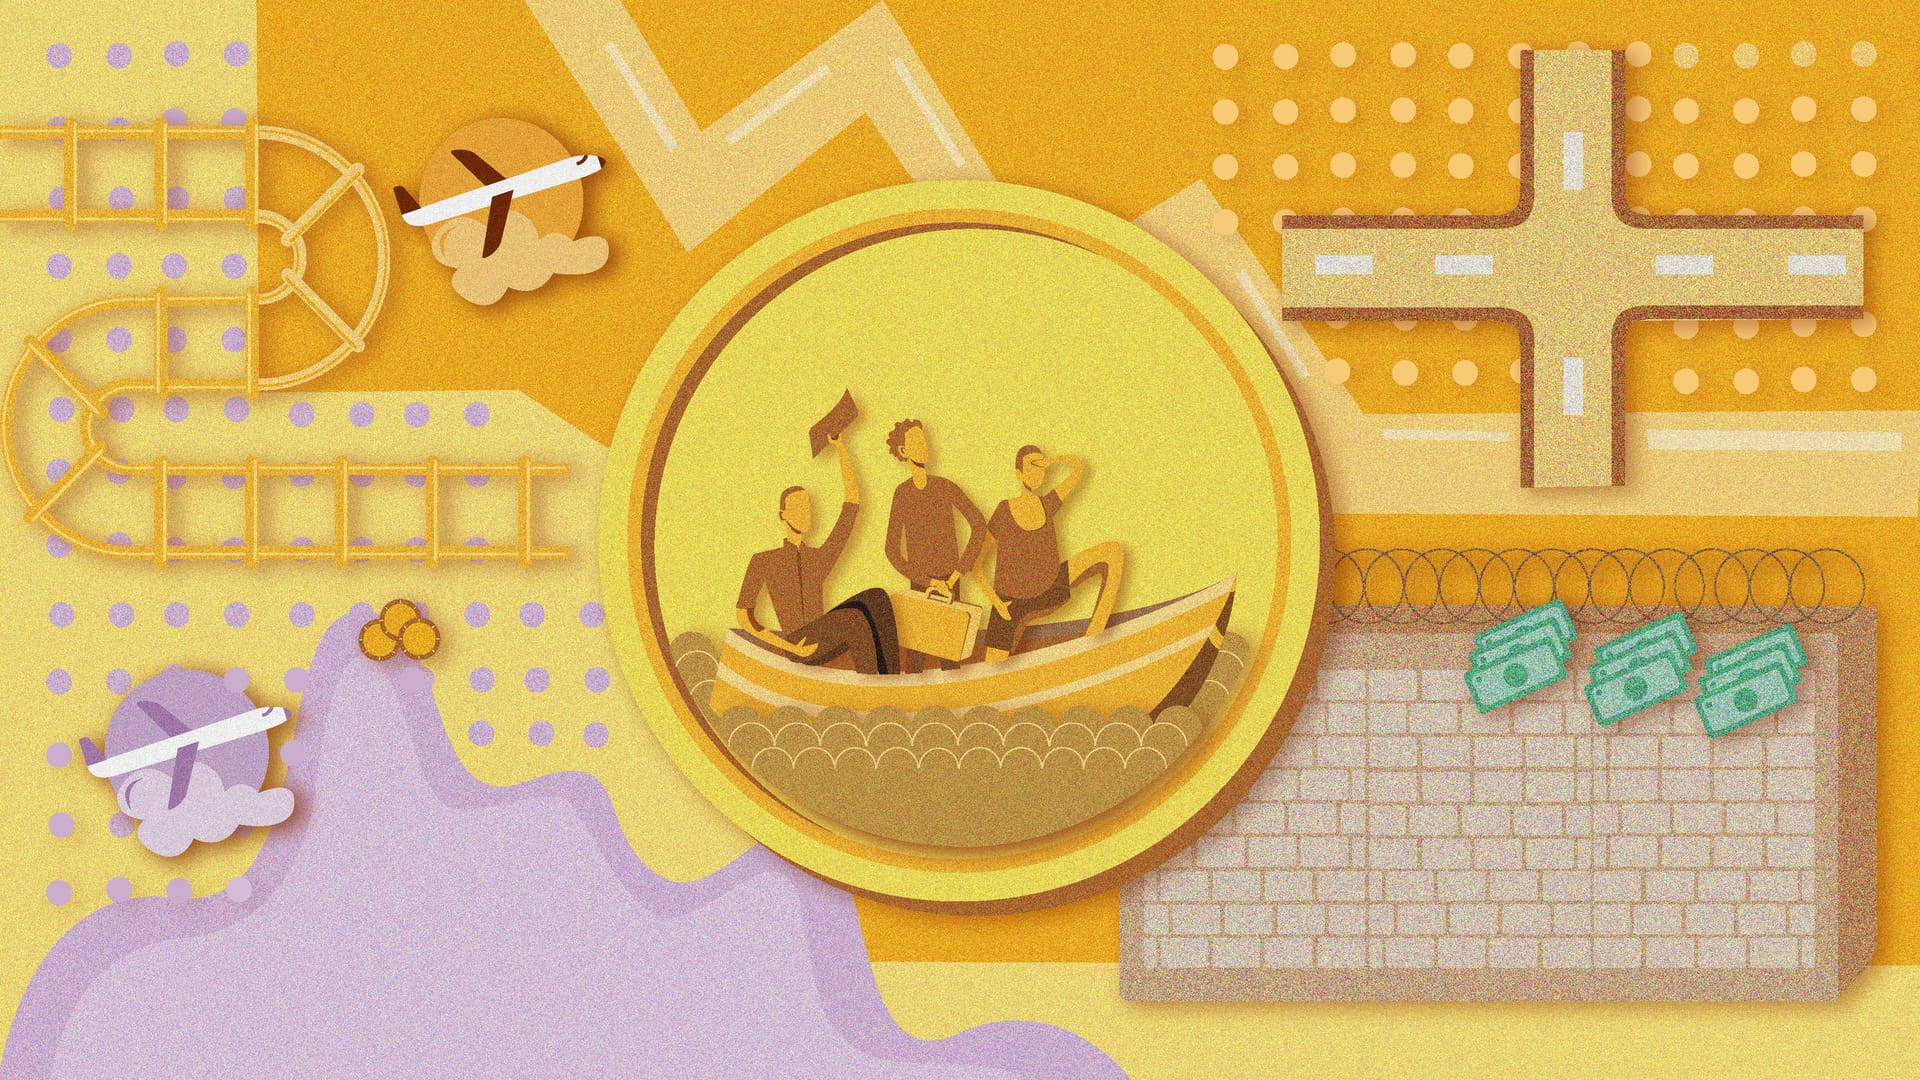 Illustratie van een munt met daarop mensen in een bootje afgebeeld